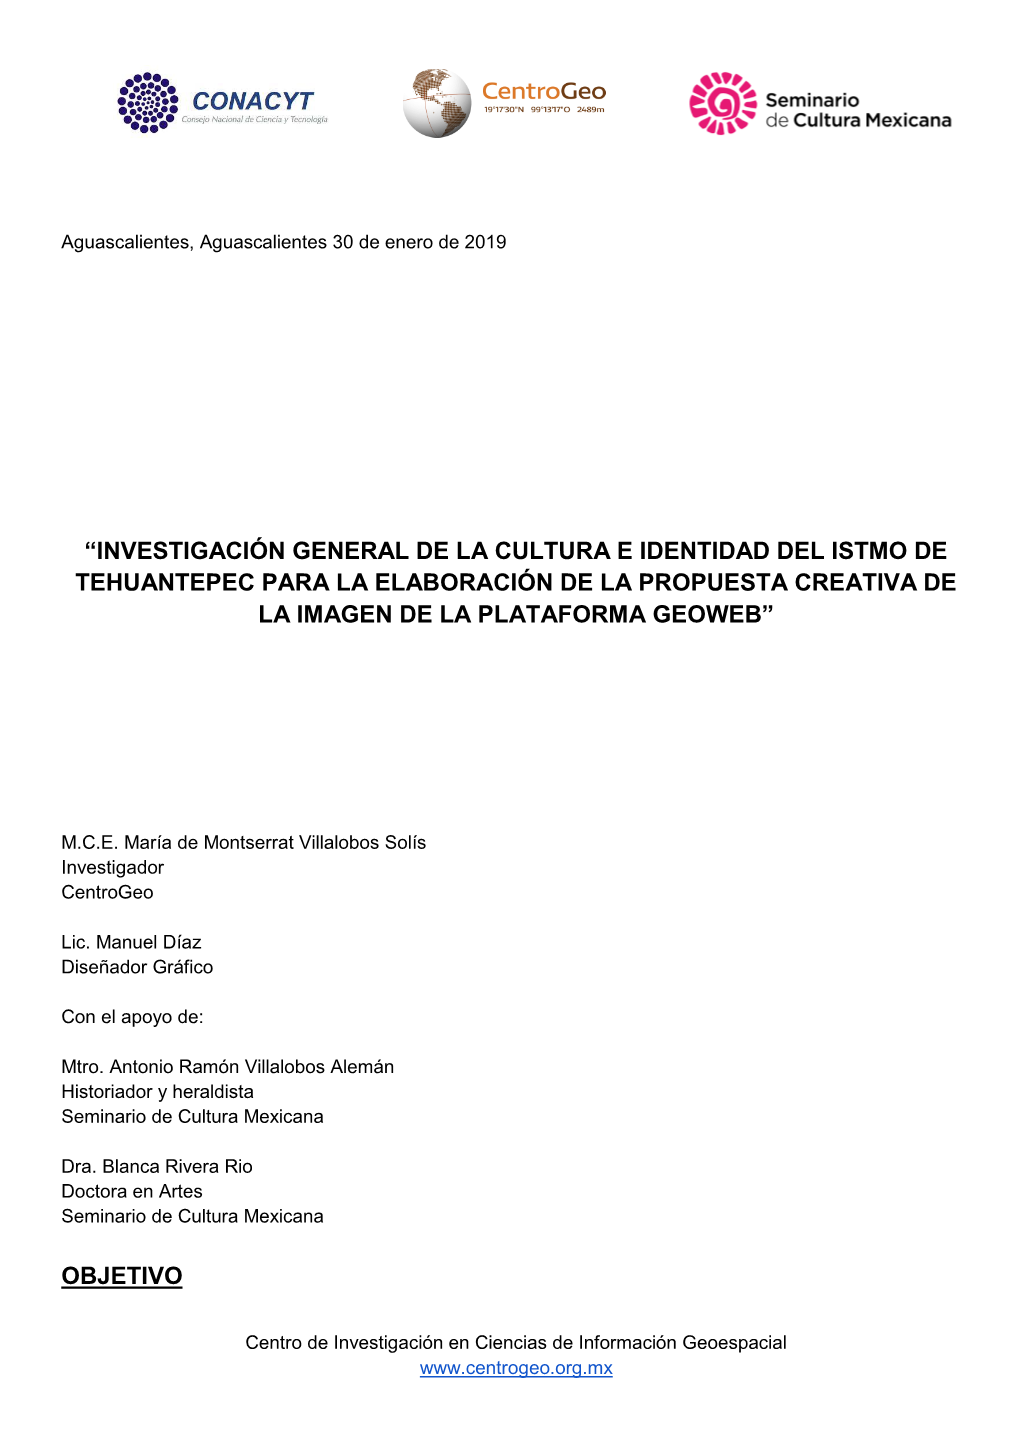 “Investigación General De La Cultura E Identidad Del Istmo De Tehuantepec Para La Elaboración De La Propuesta Creativa De La Imagen De La Plataforma Geoweb”